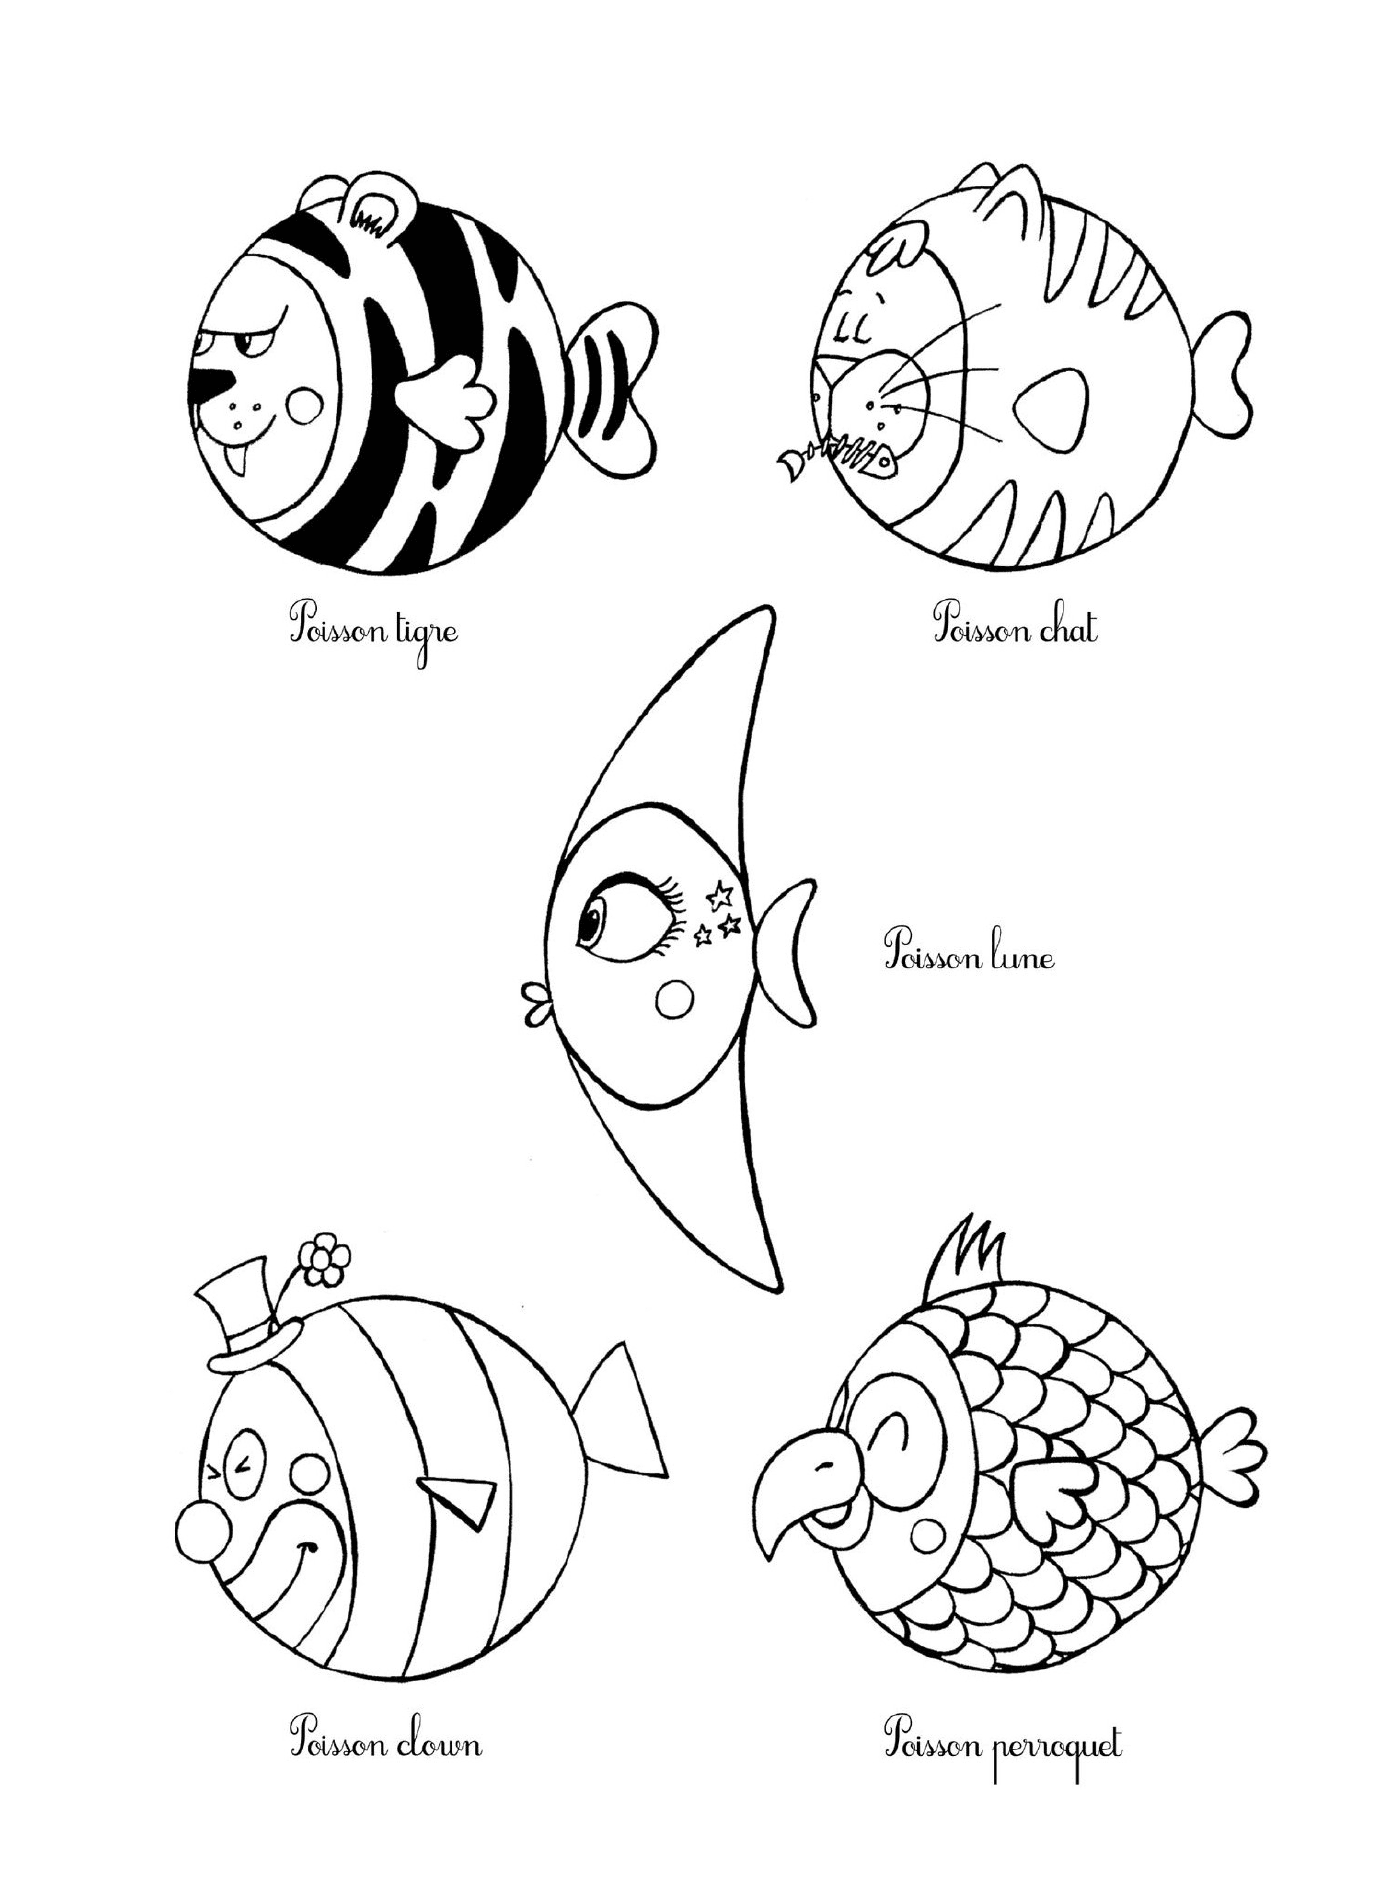   Plusieurs poissons dessinés 